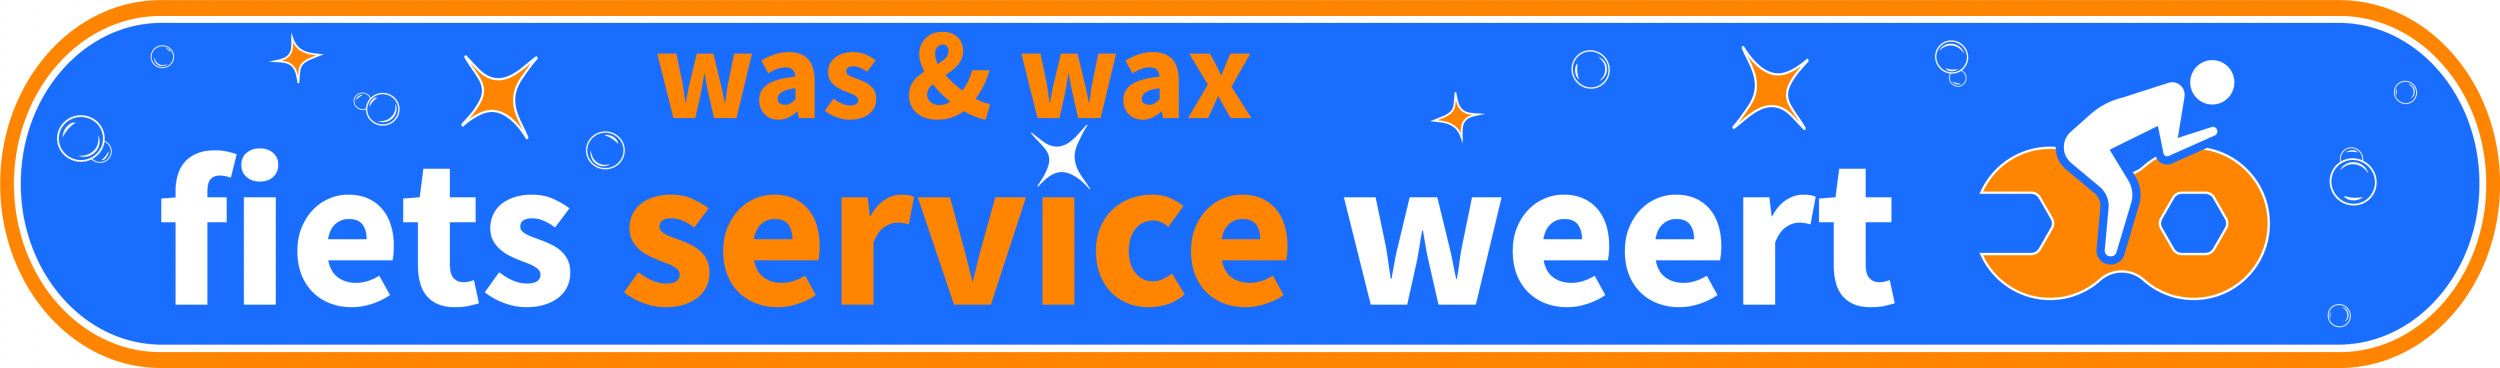 Banner-was-wax-service-100-1668171752.jpg